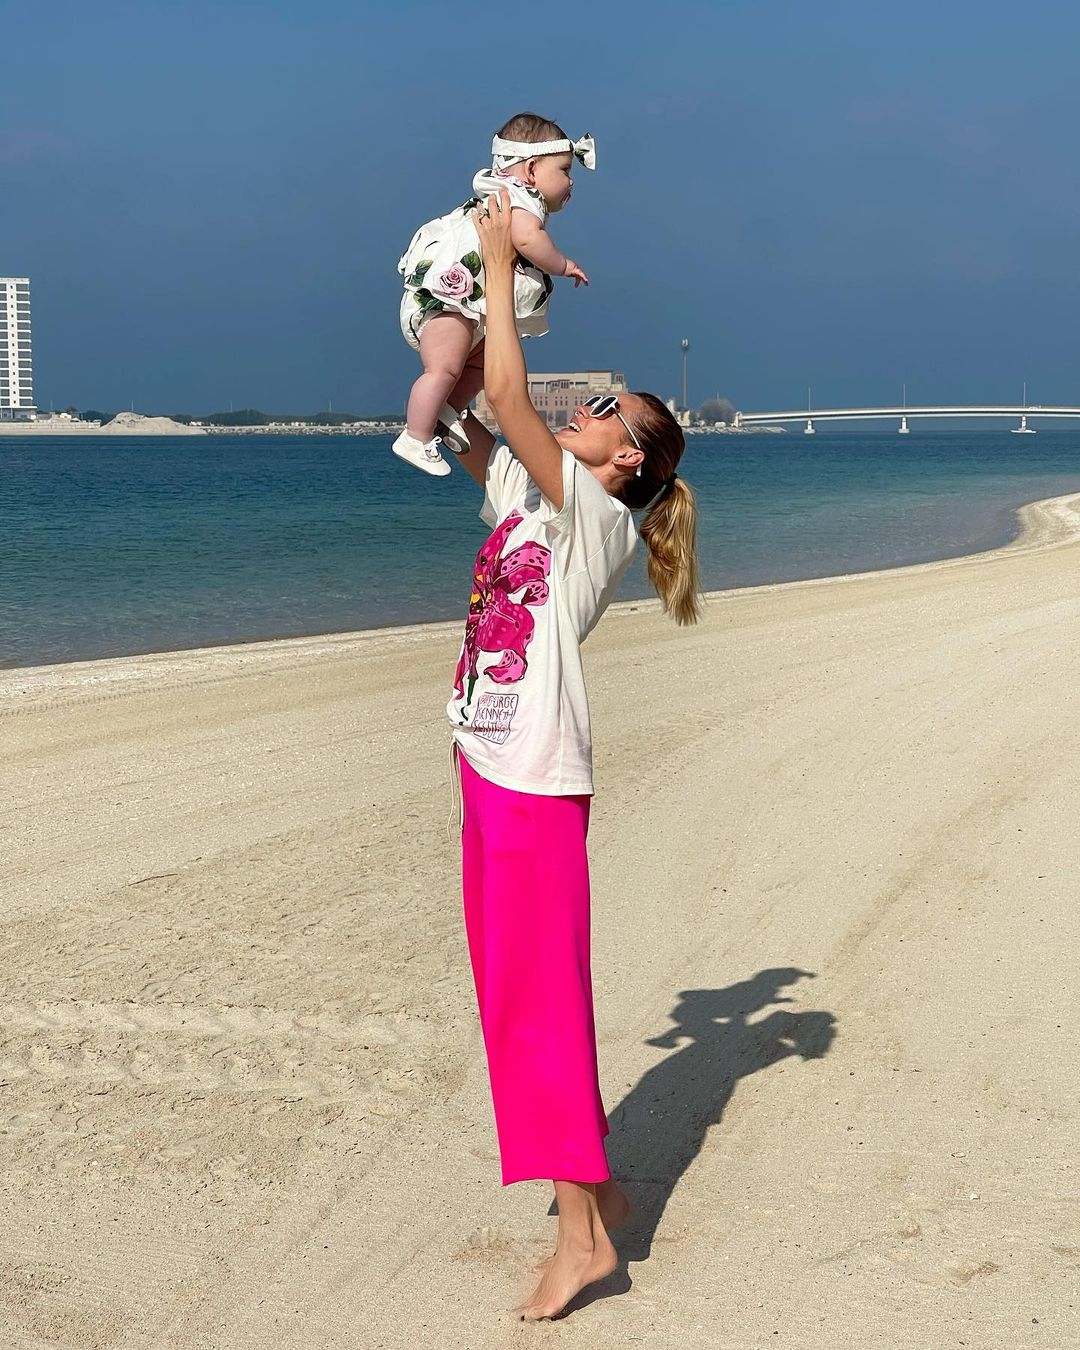 Солнечный пляж и сказочные единороги: Анастасия Масюткина поздравила 6-месячную дочь